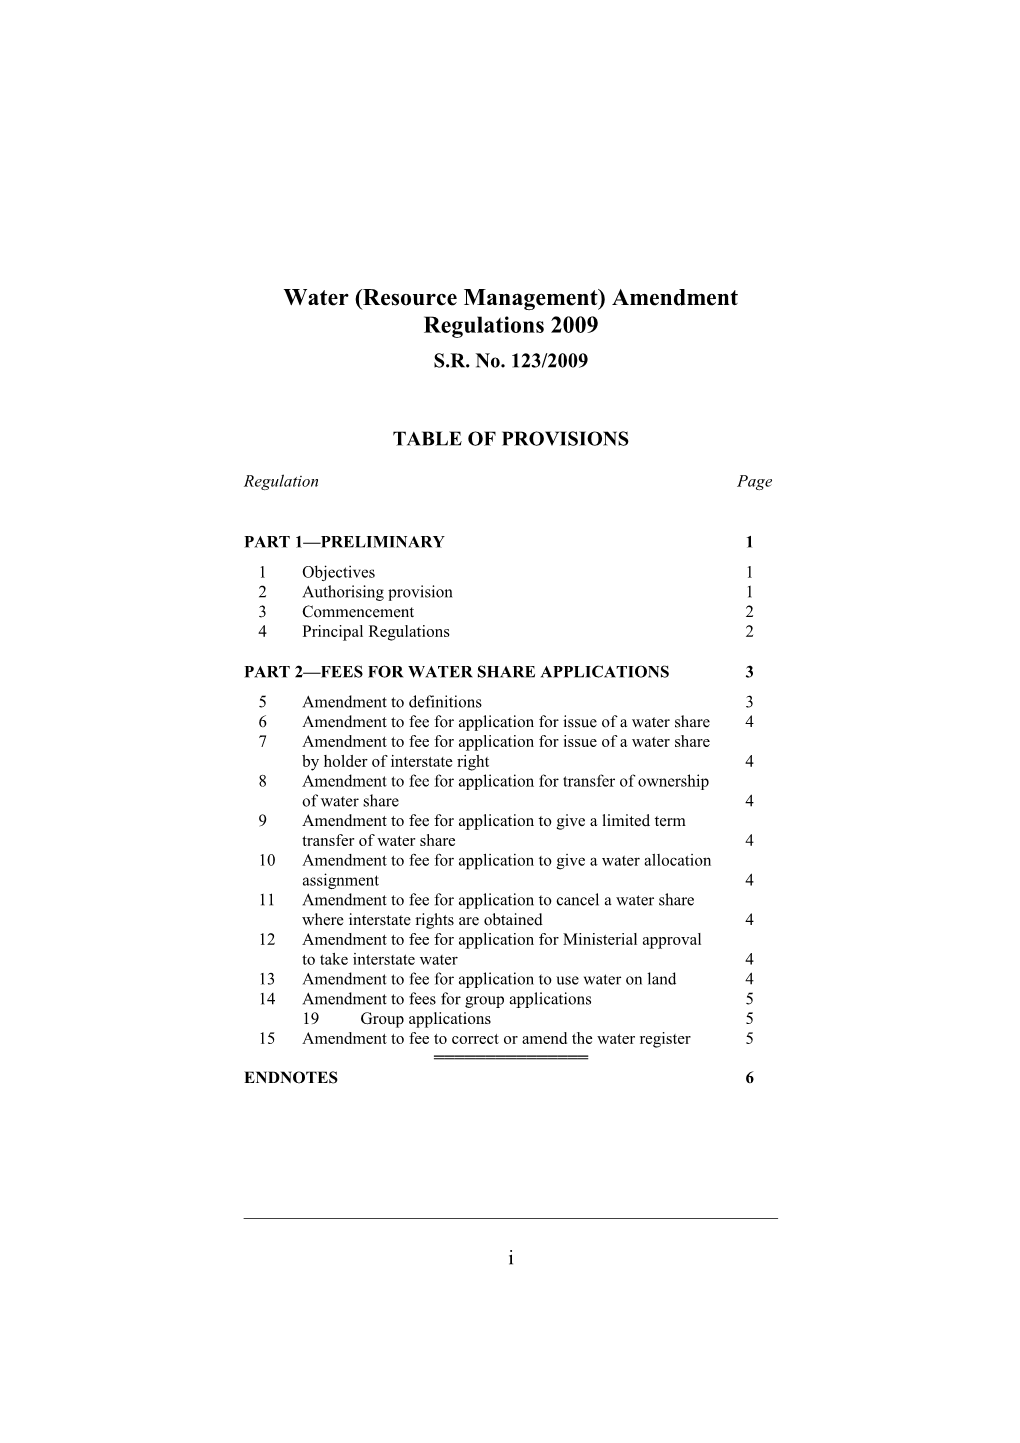 Water (Resource Management) Amendment Regulations 2009